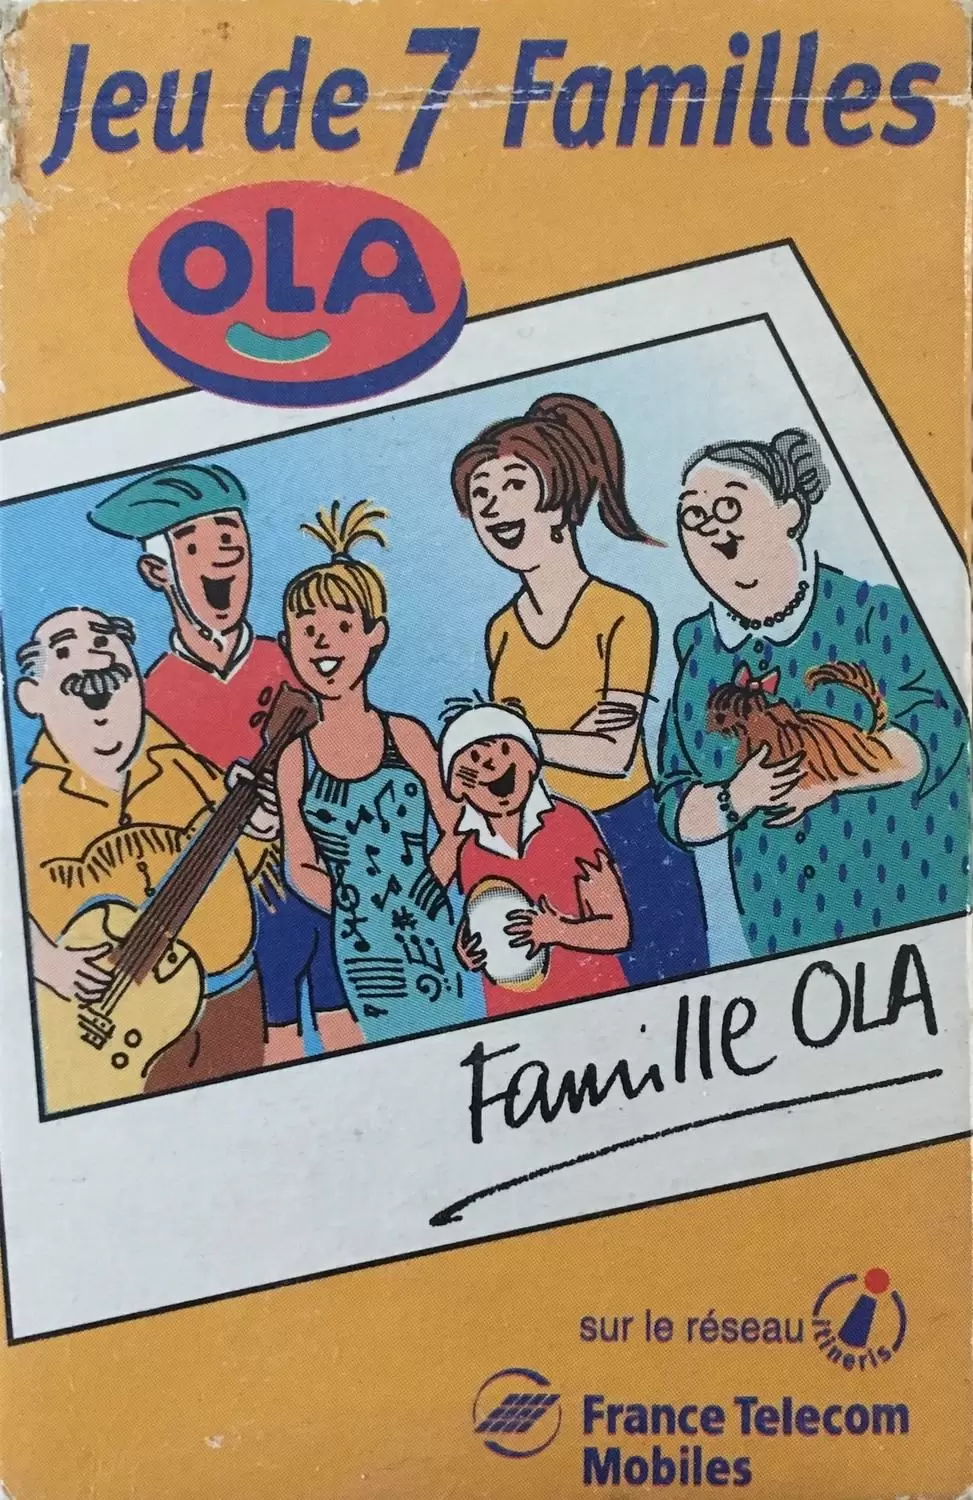 Jeu des 7 Familles - Jeu de 7 familles Ola